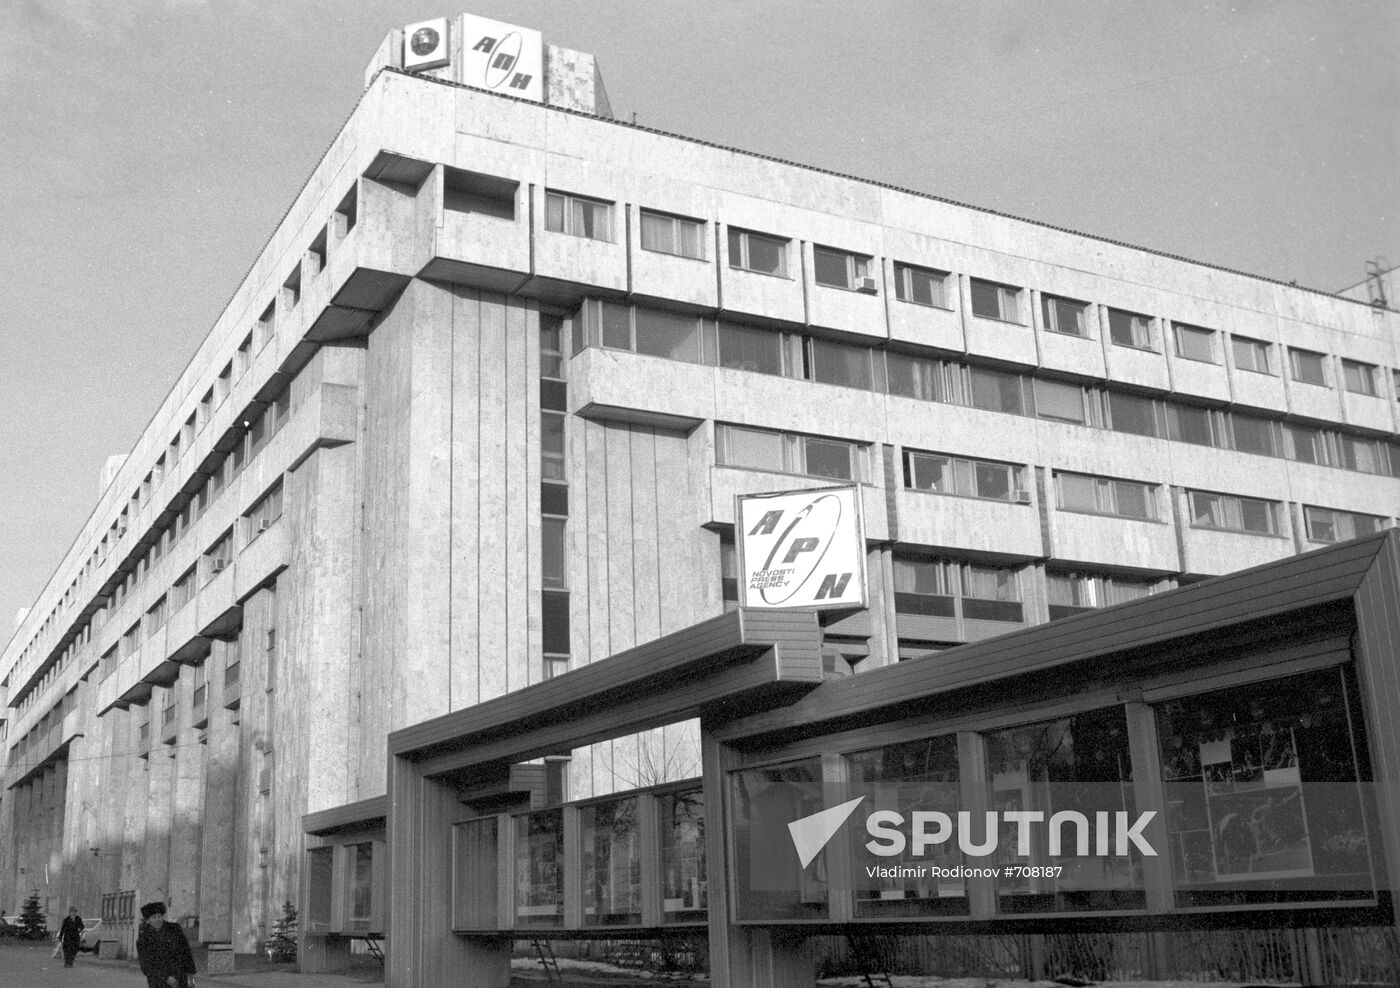 Novosti News Agency building